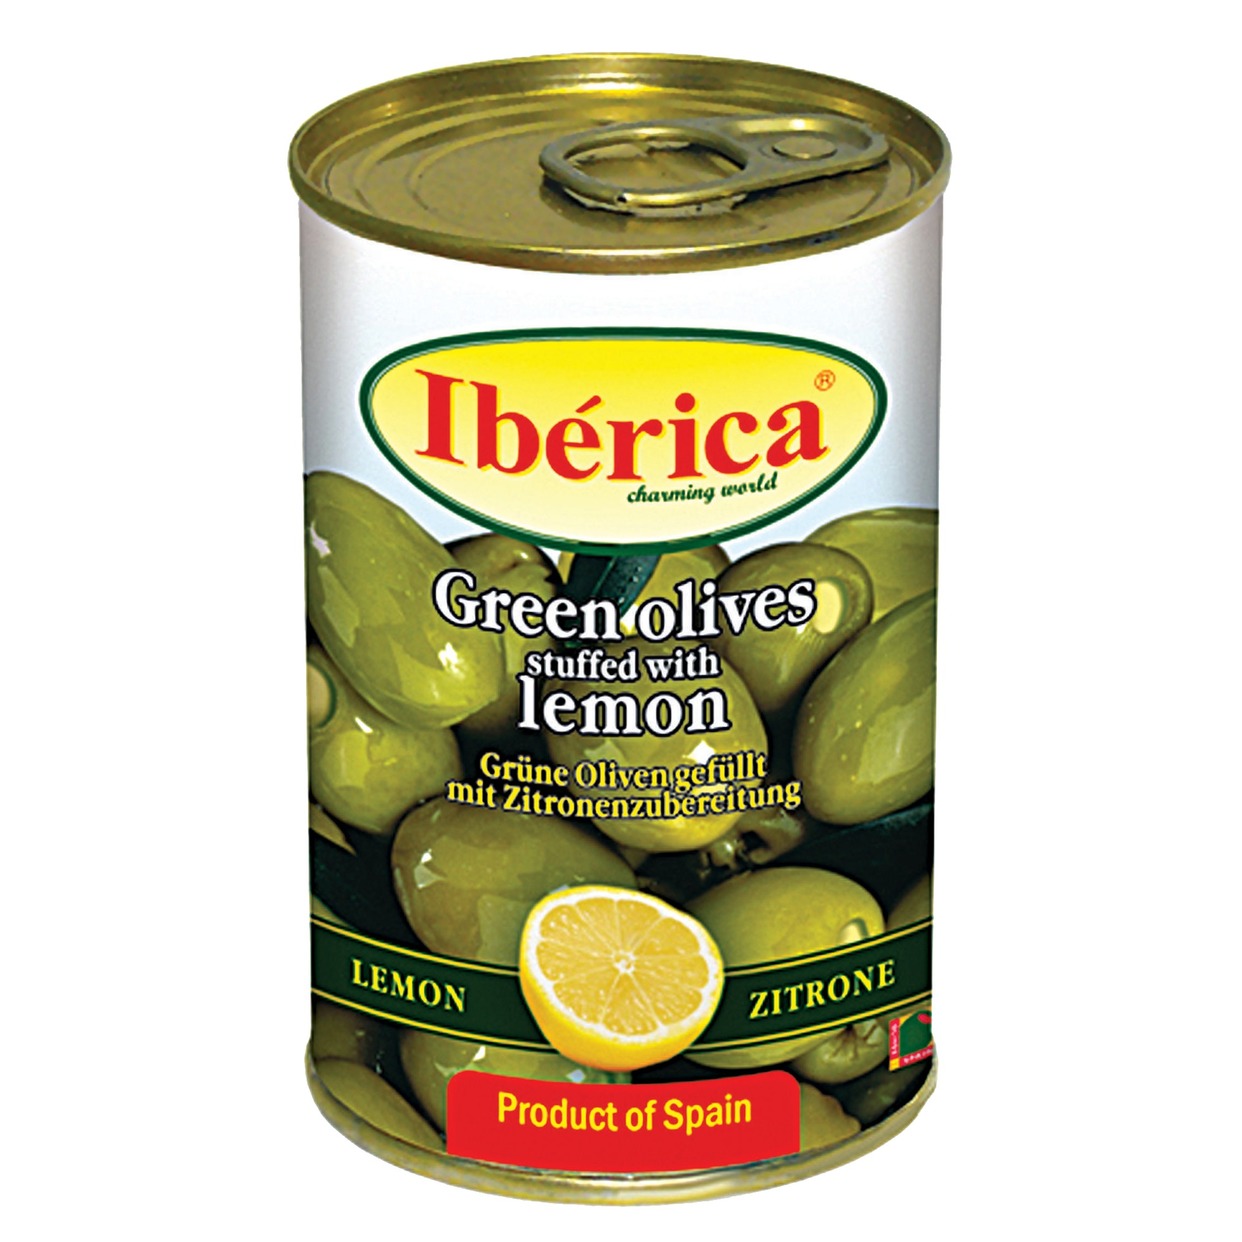 Оливки фарш. 300г Iberica лимон по акции в Пятерочке